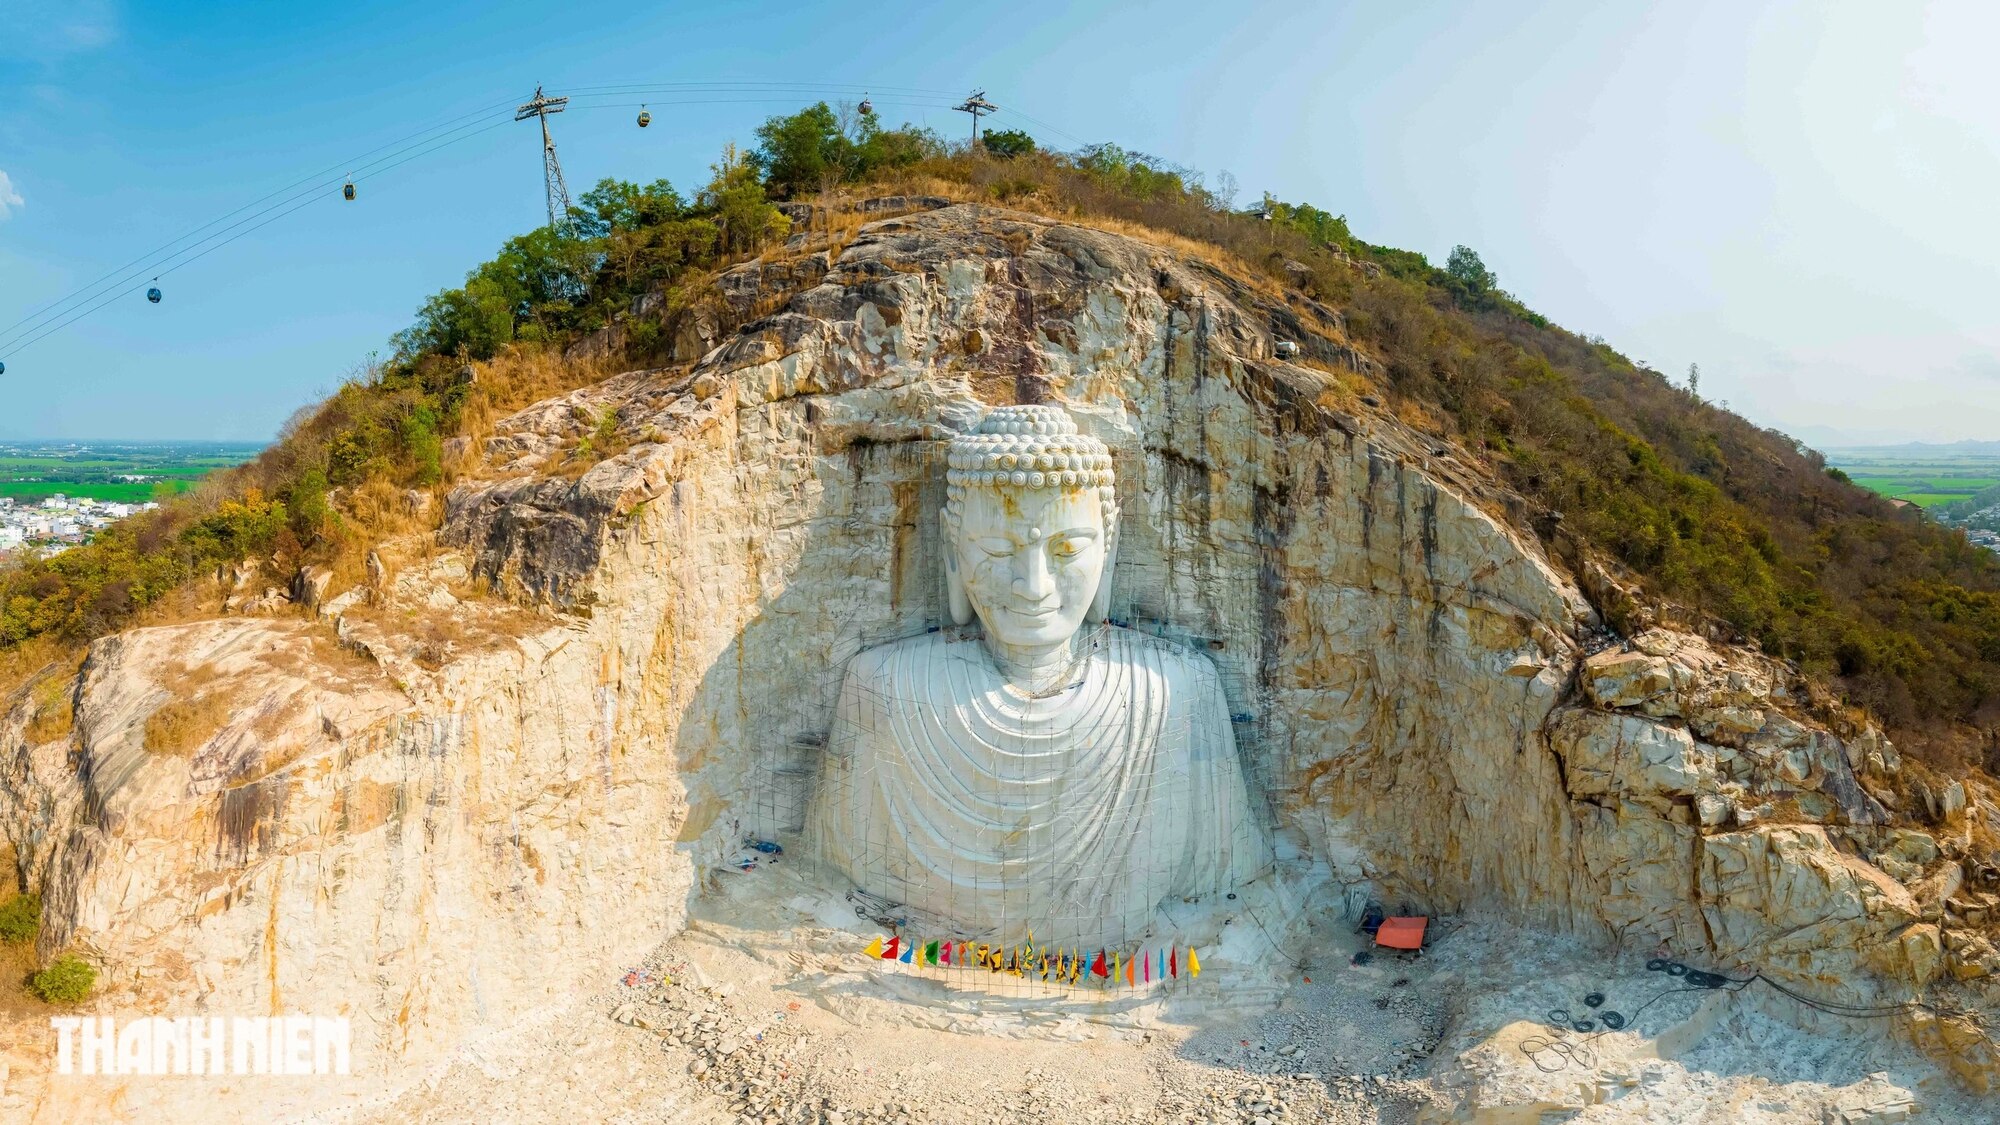 Chiêm ngưỡng tượng Phật cao 81m tạc trong vách núi An Giang- Ảnh 2.